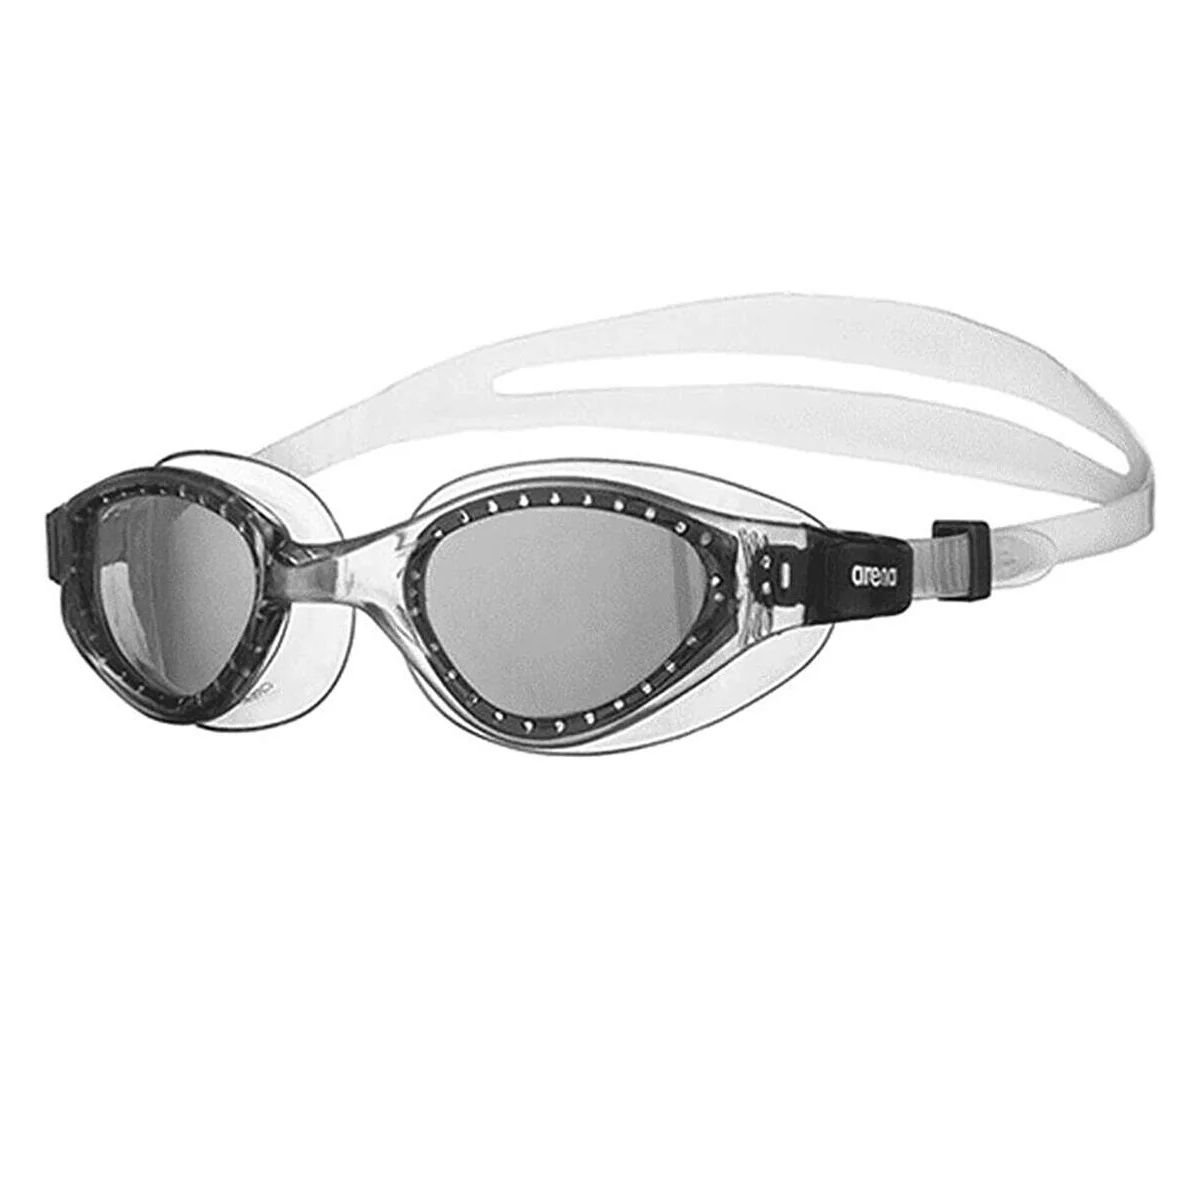 عینک شنا آرنا مدل Cruıser Evo -  - 2